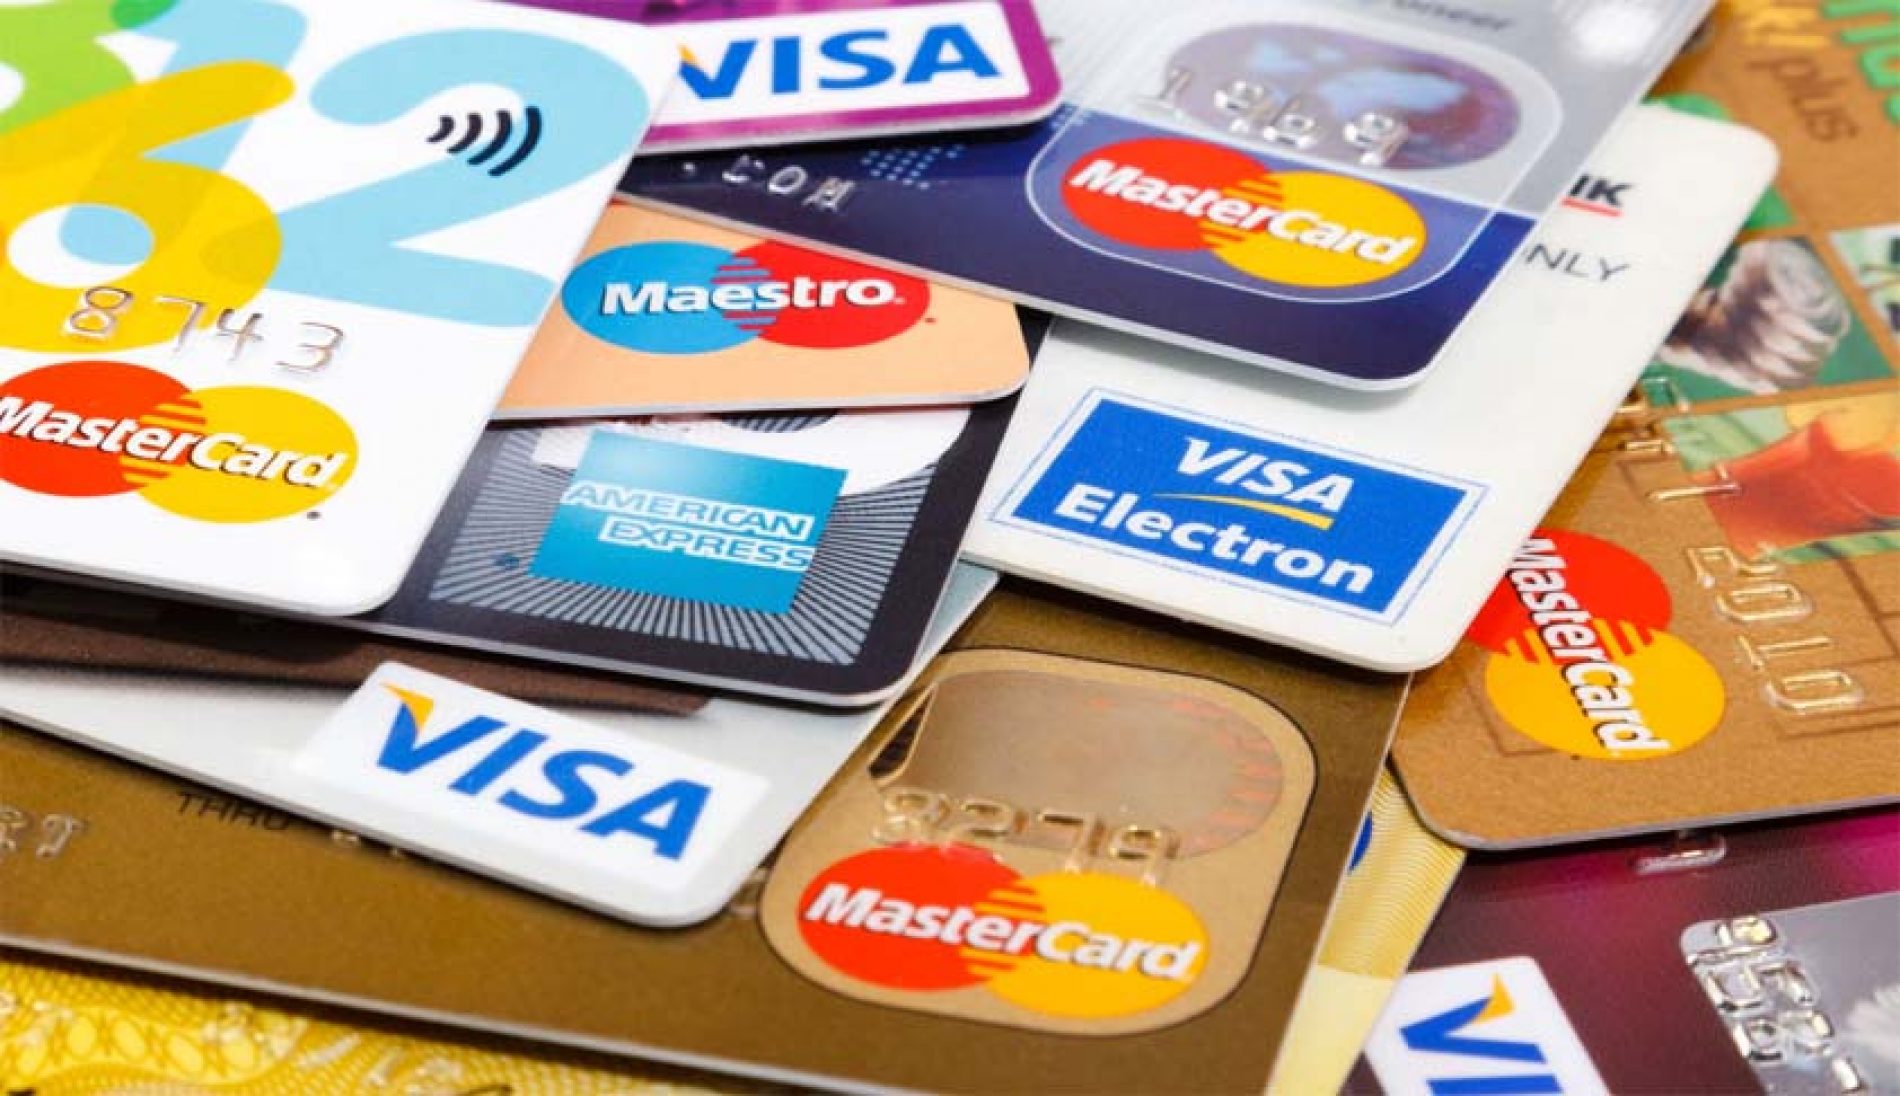 BARRETOS: Vítima tem compras indevidas em seu cartão de crédito